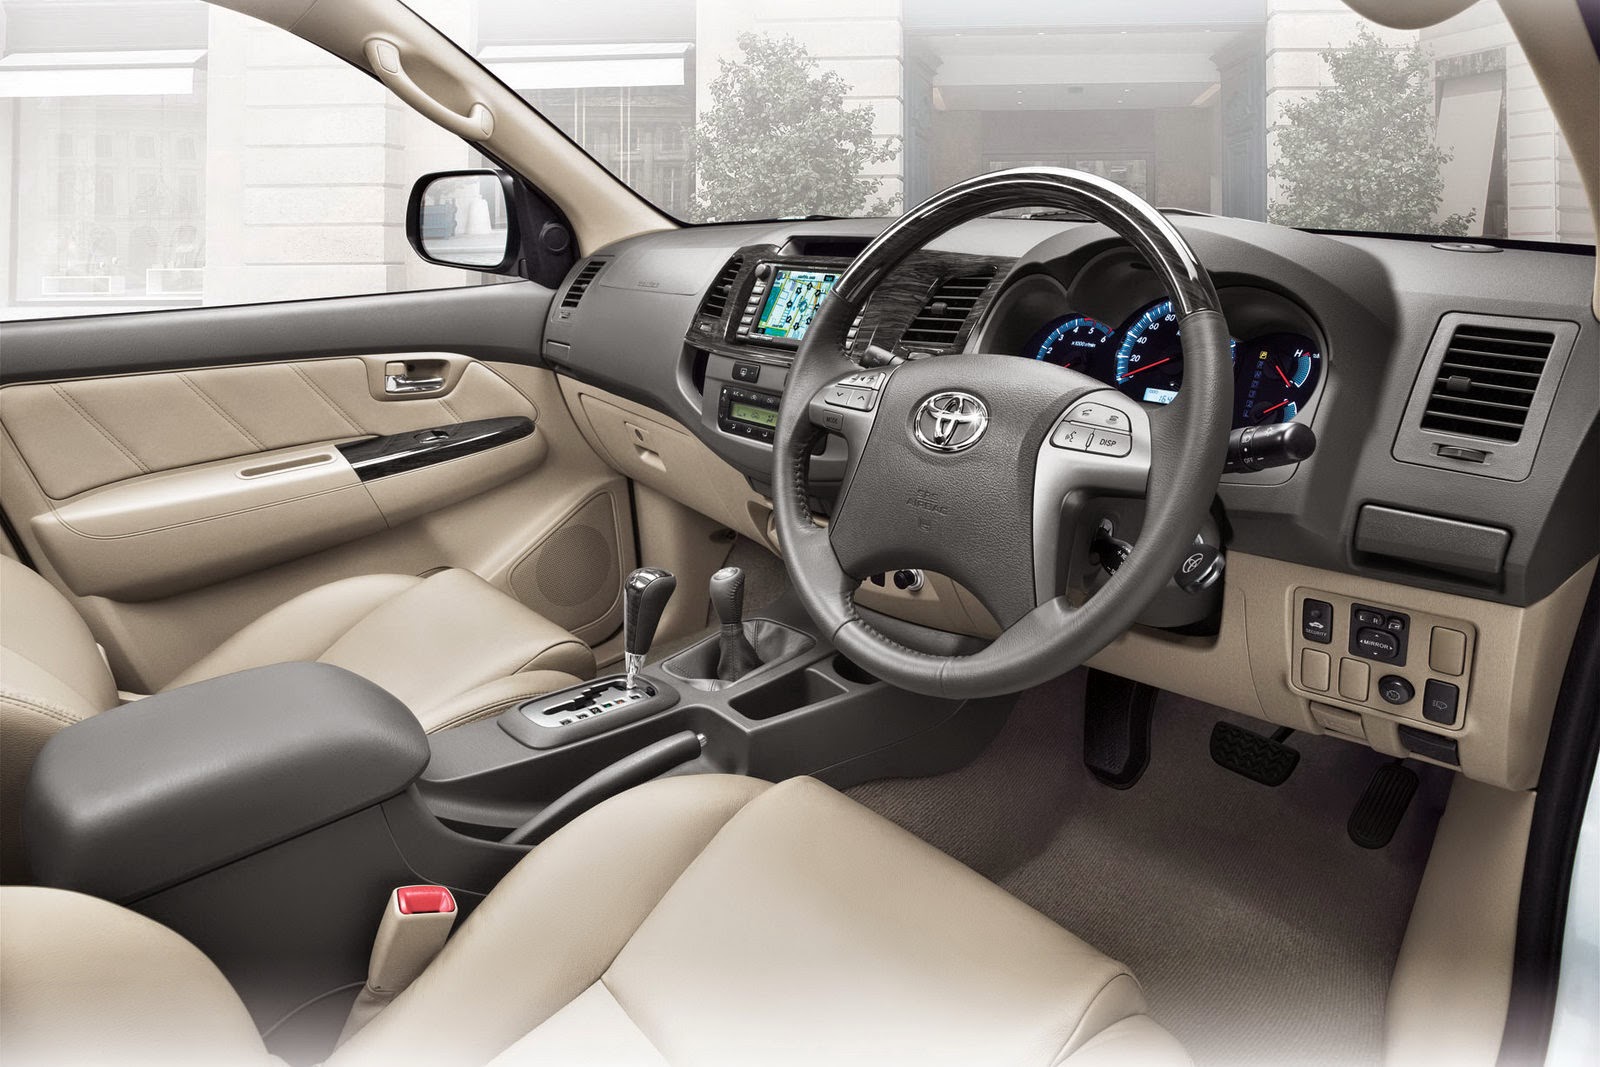 Kumpulan Gambar Toyota Fortuner Download Wallpaper Mobil Gratis